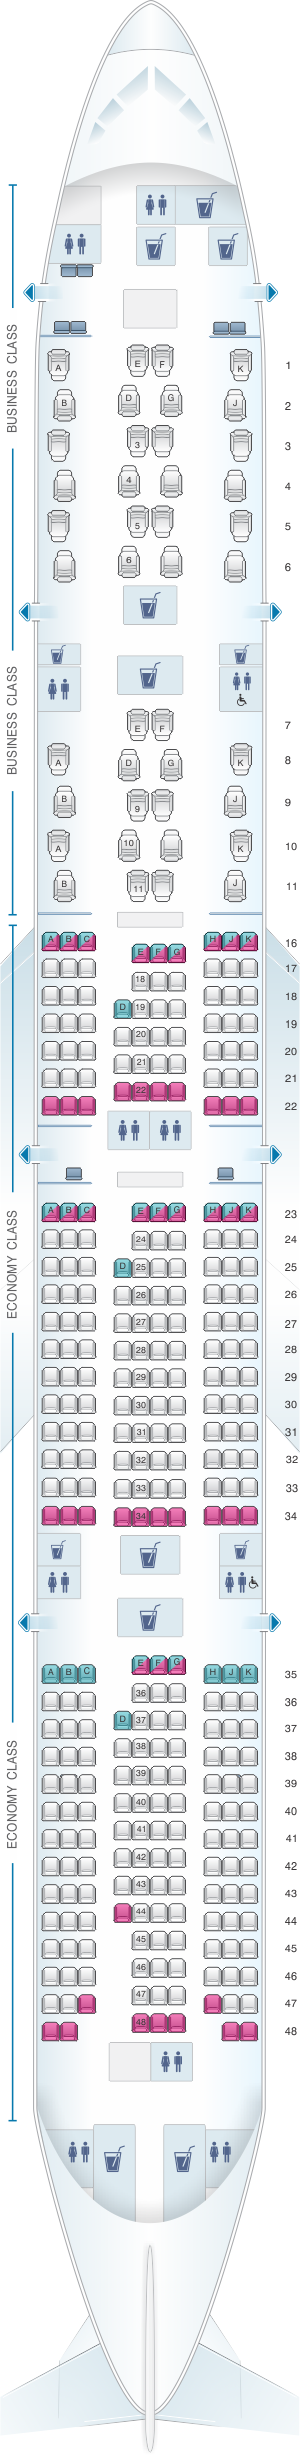 Plan de cabine Qatar Airways Boeing B777 300ER Qsuite | SeatMaestro.fr